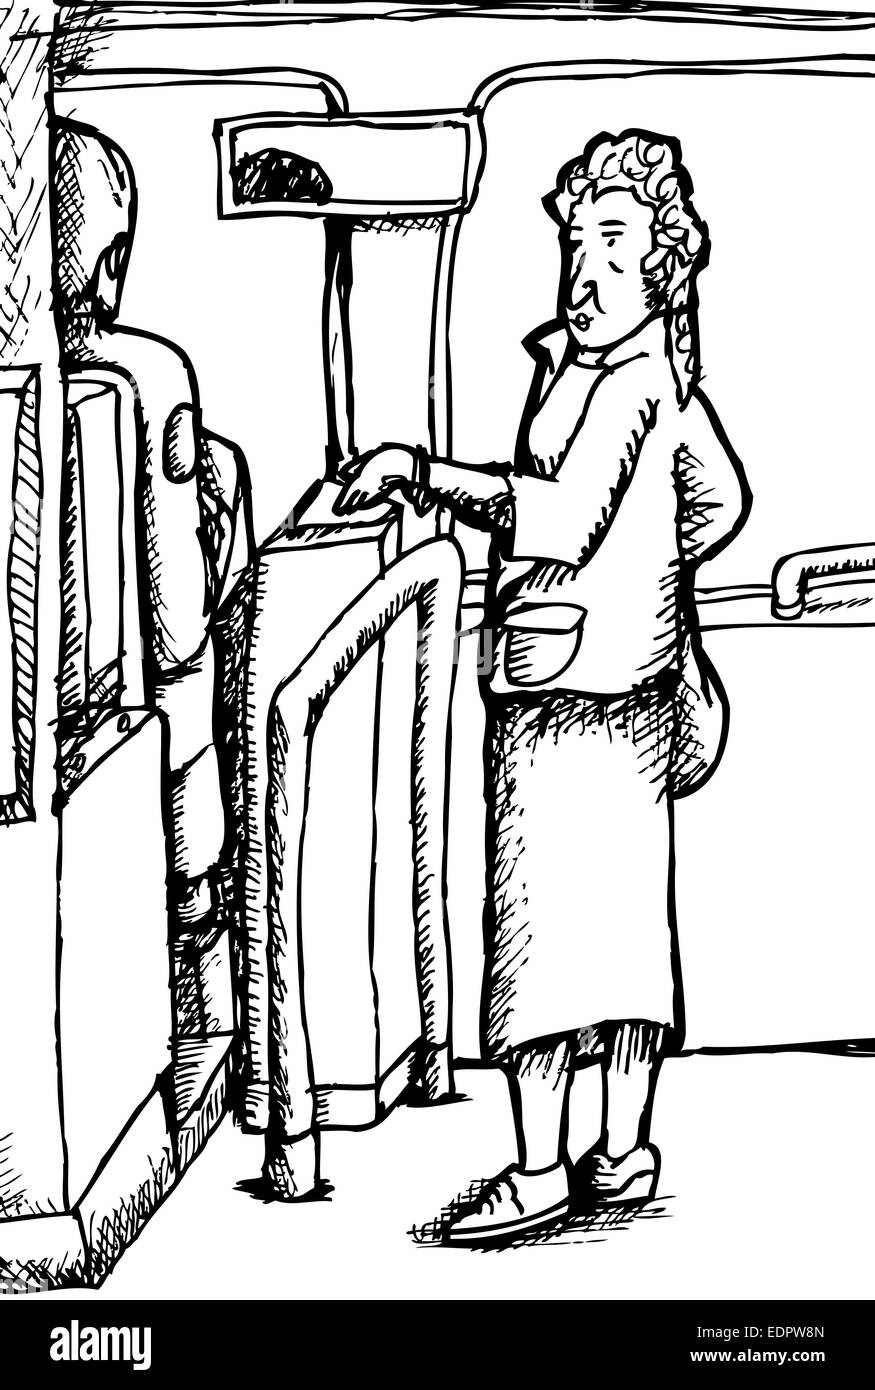 Contours caricature de femme femelle pour monter sur le bus Banque D'Images